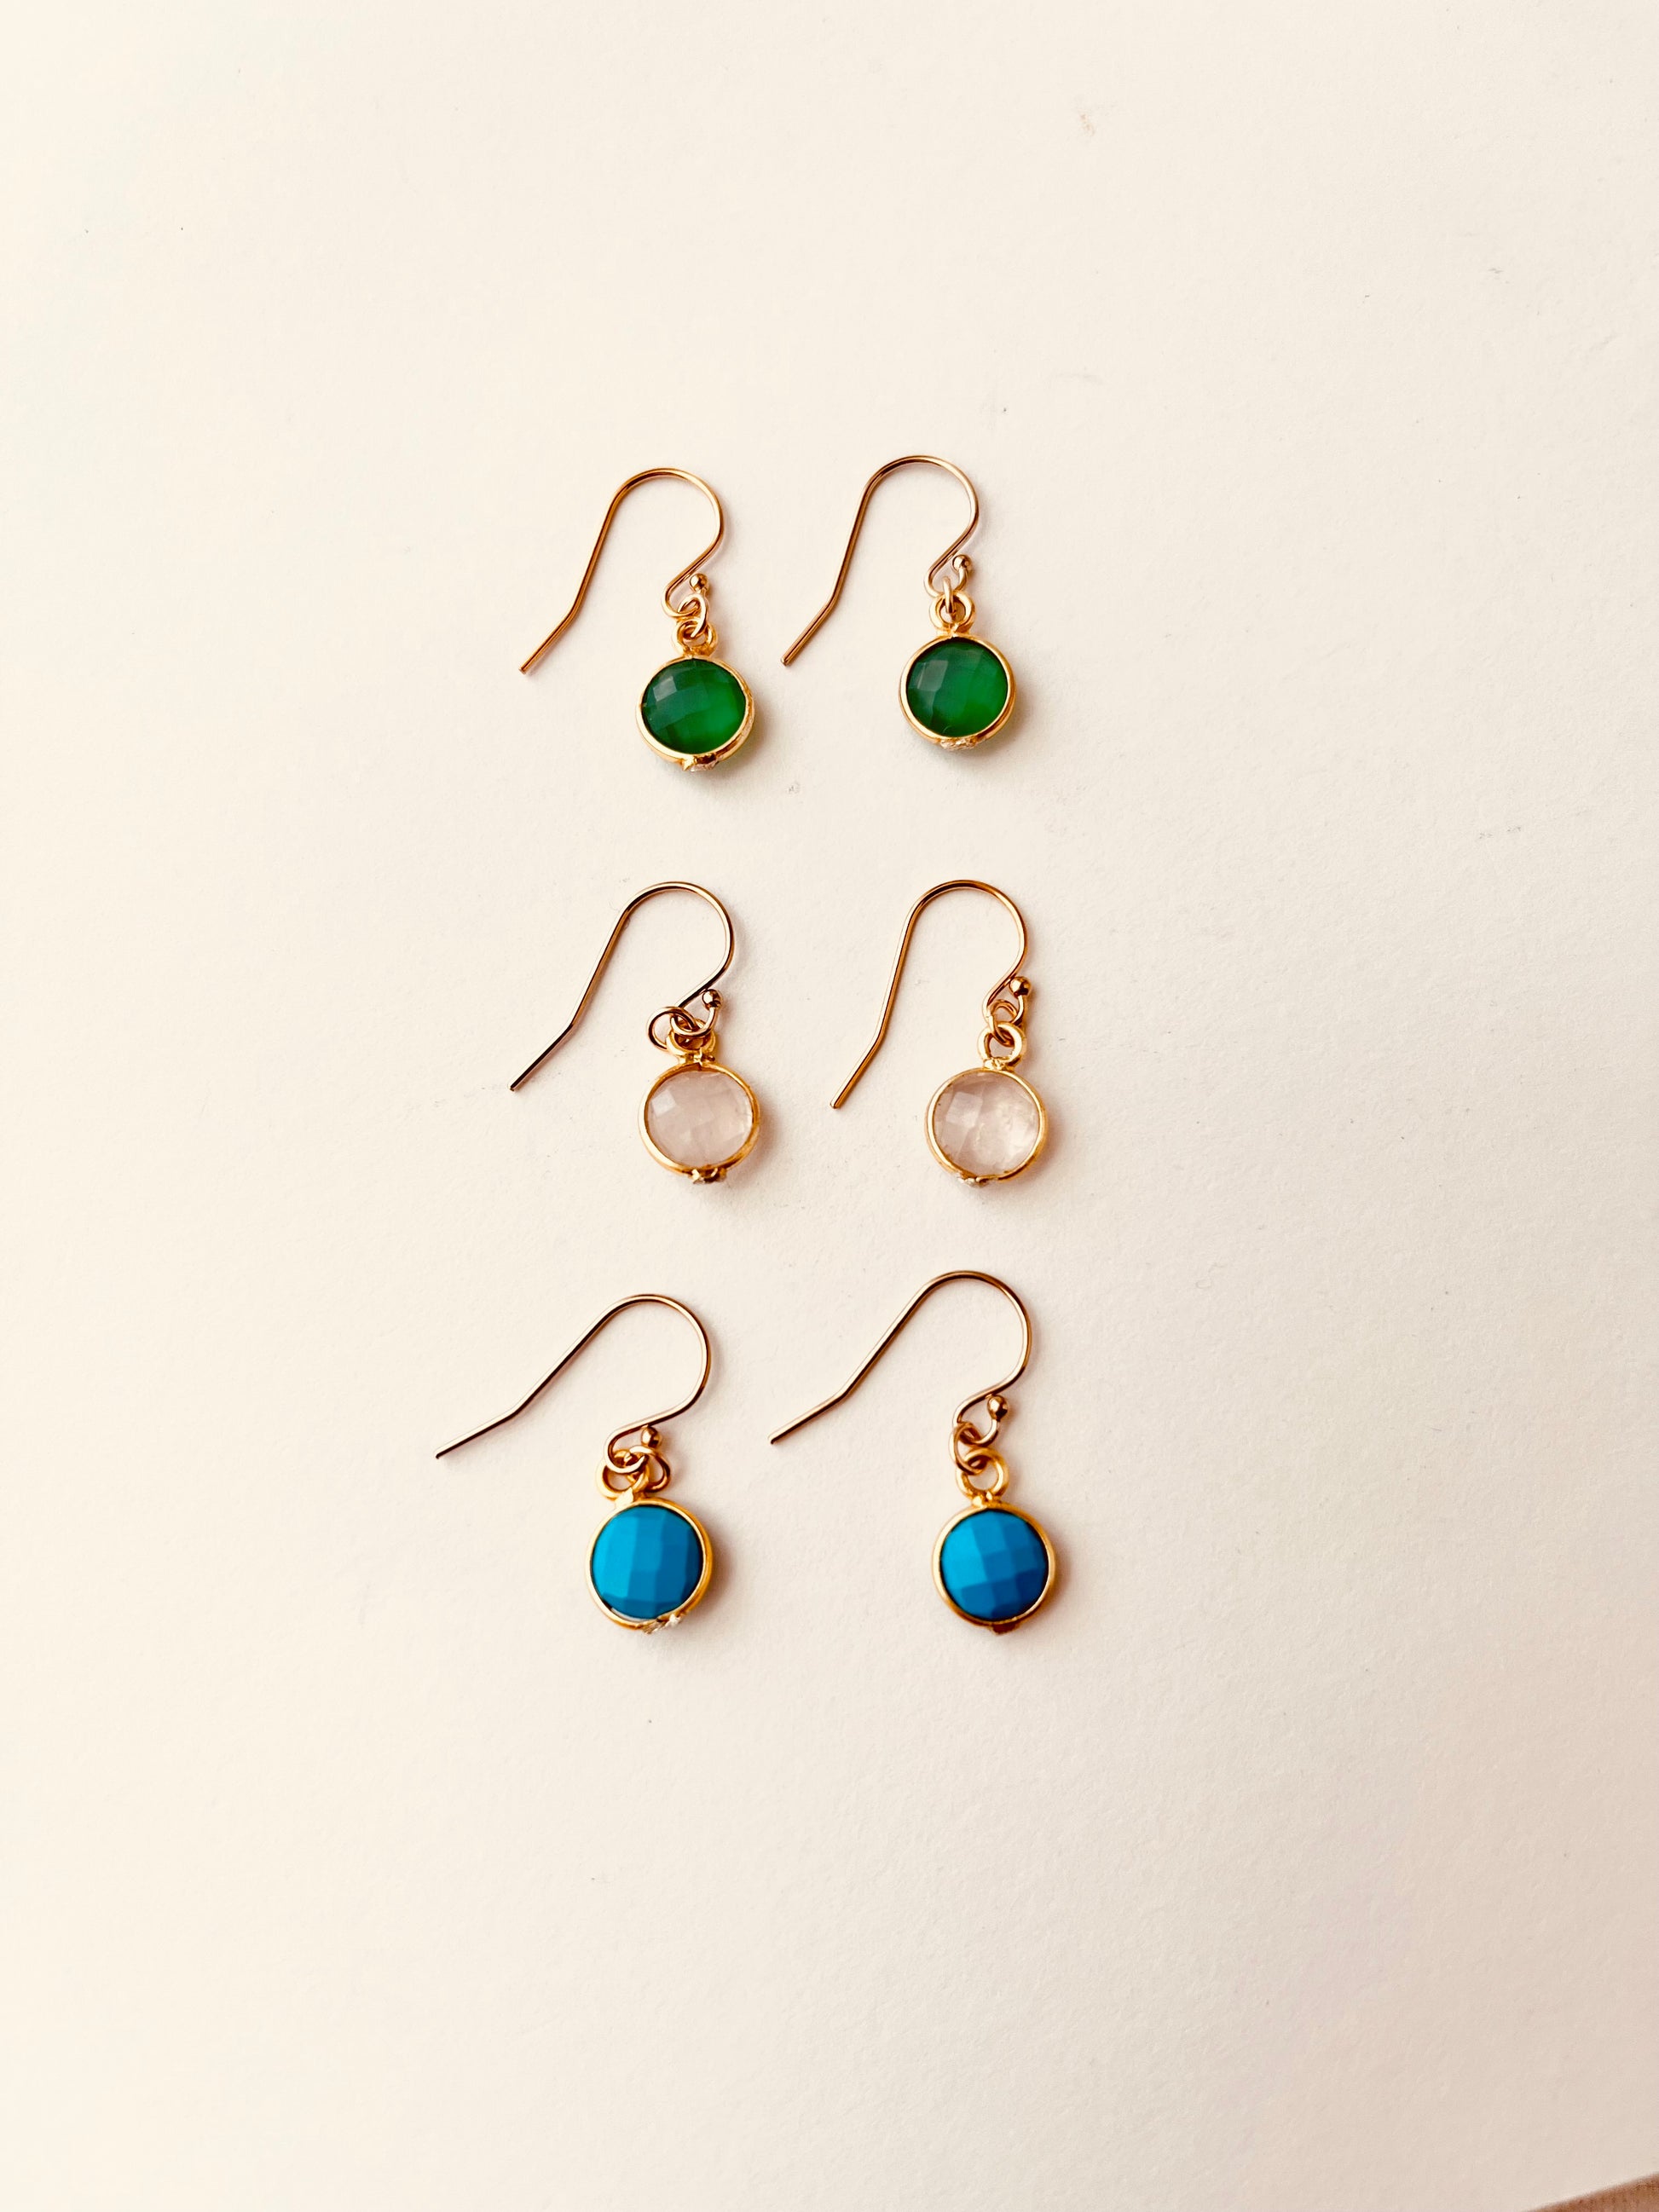 Gemstone Drop Earrings, Turquoise Earrings, Rose Quartz Earrings, Green Onyx Earrings, Dainty Drop Earrings, Gift For Her